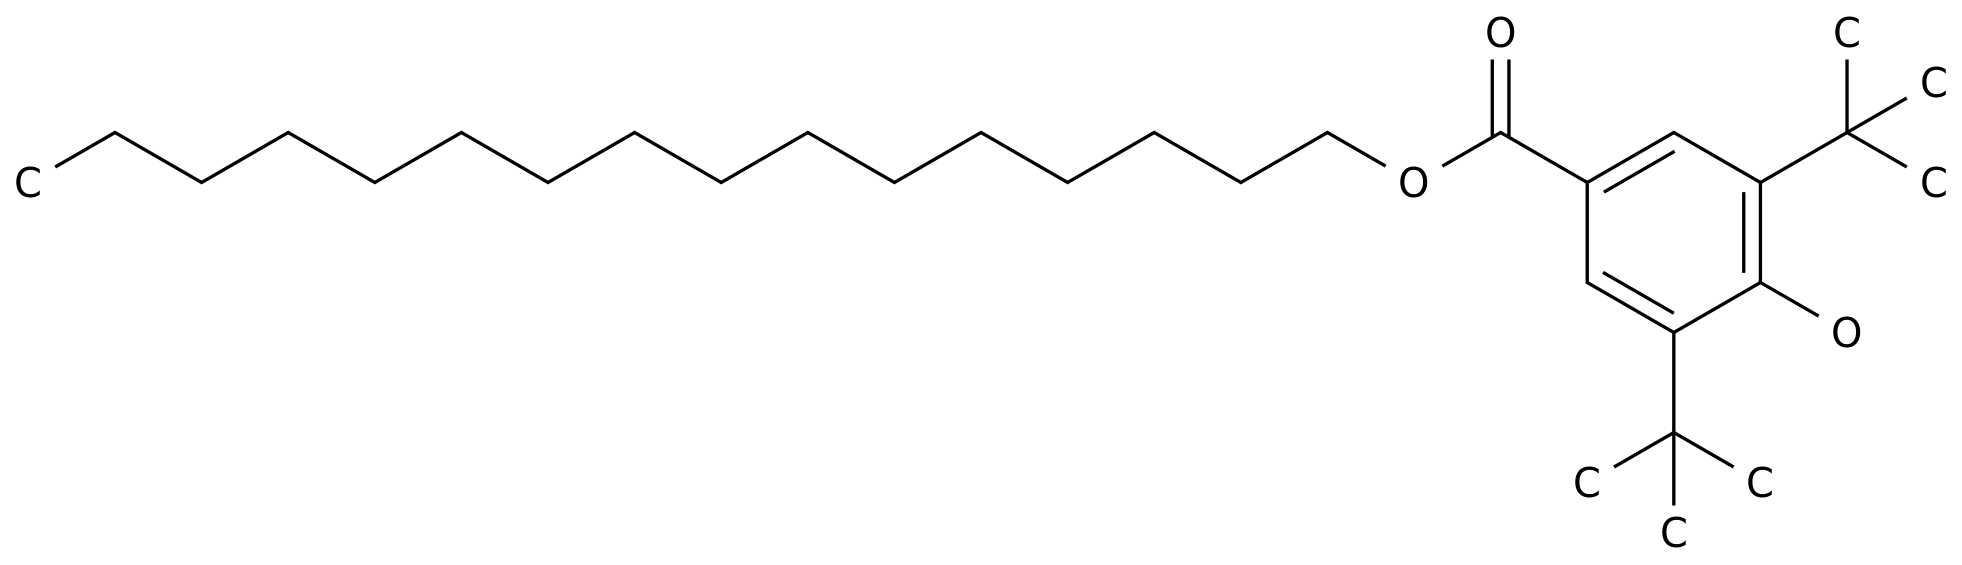 Hexadecyl 3,5-bis-tert-butyl-4-hydroxybenzoate